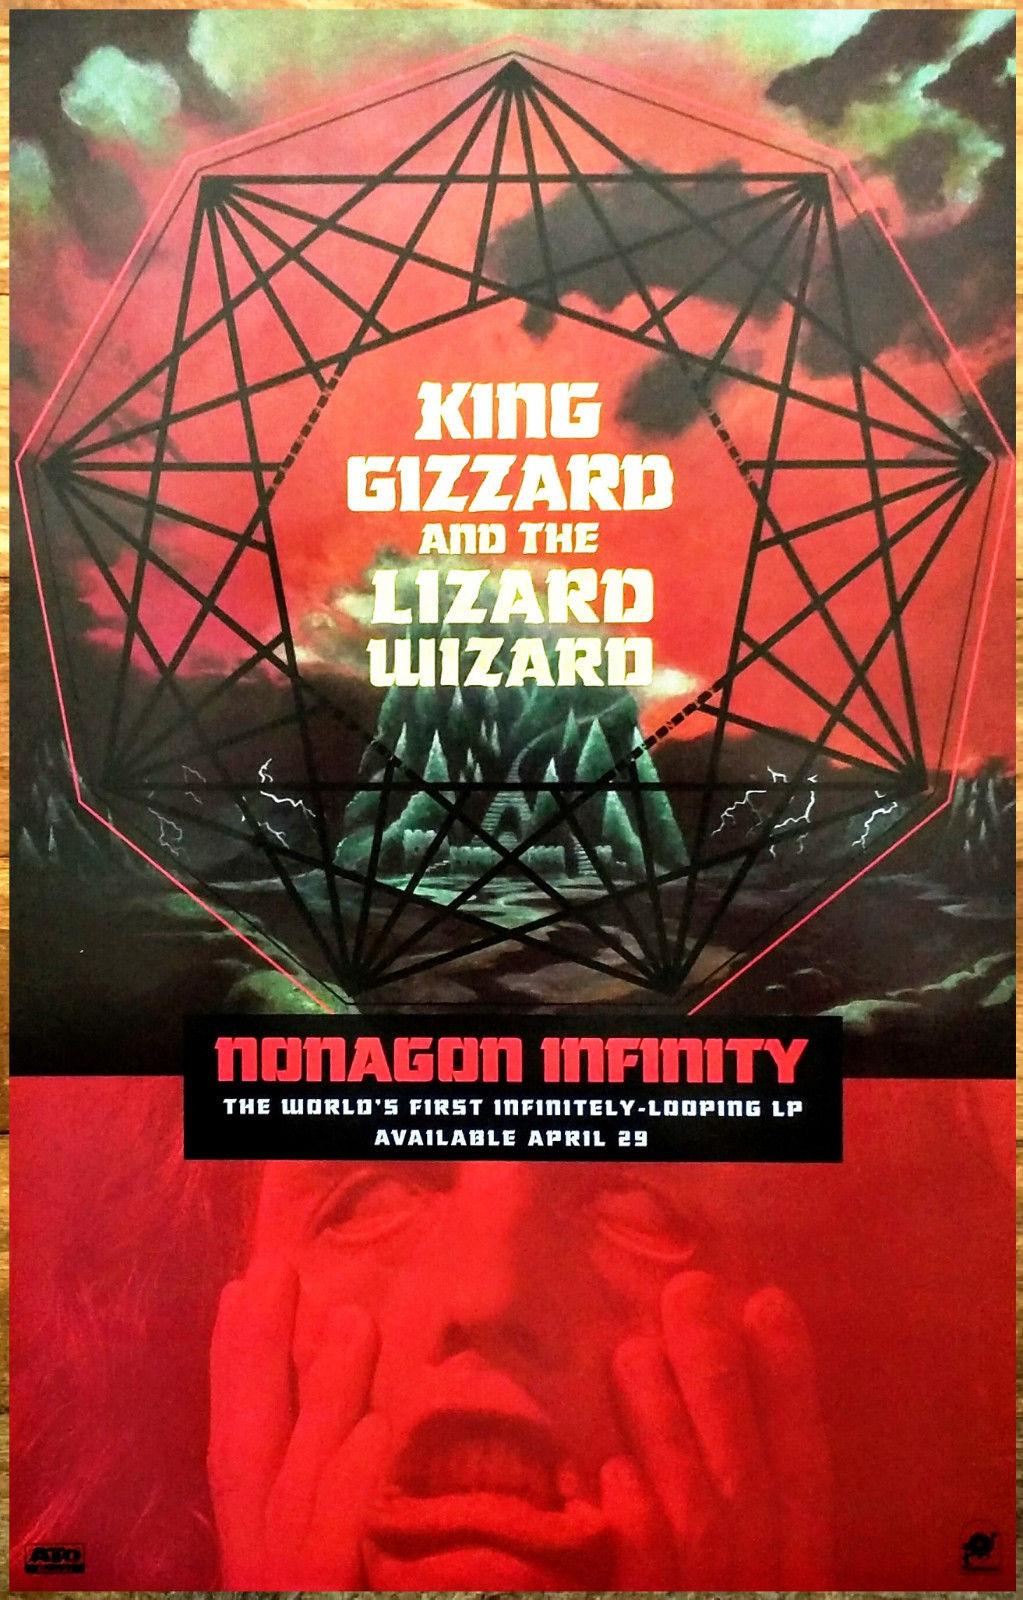 KING GIZZARD & THE LIZARD WIZARD Art Silk Poster 24x36inch